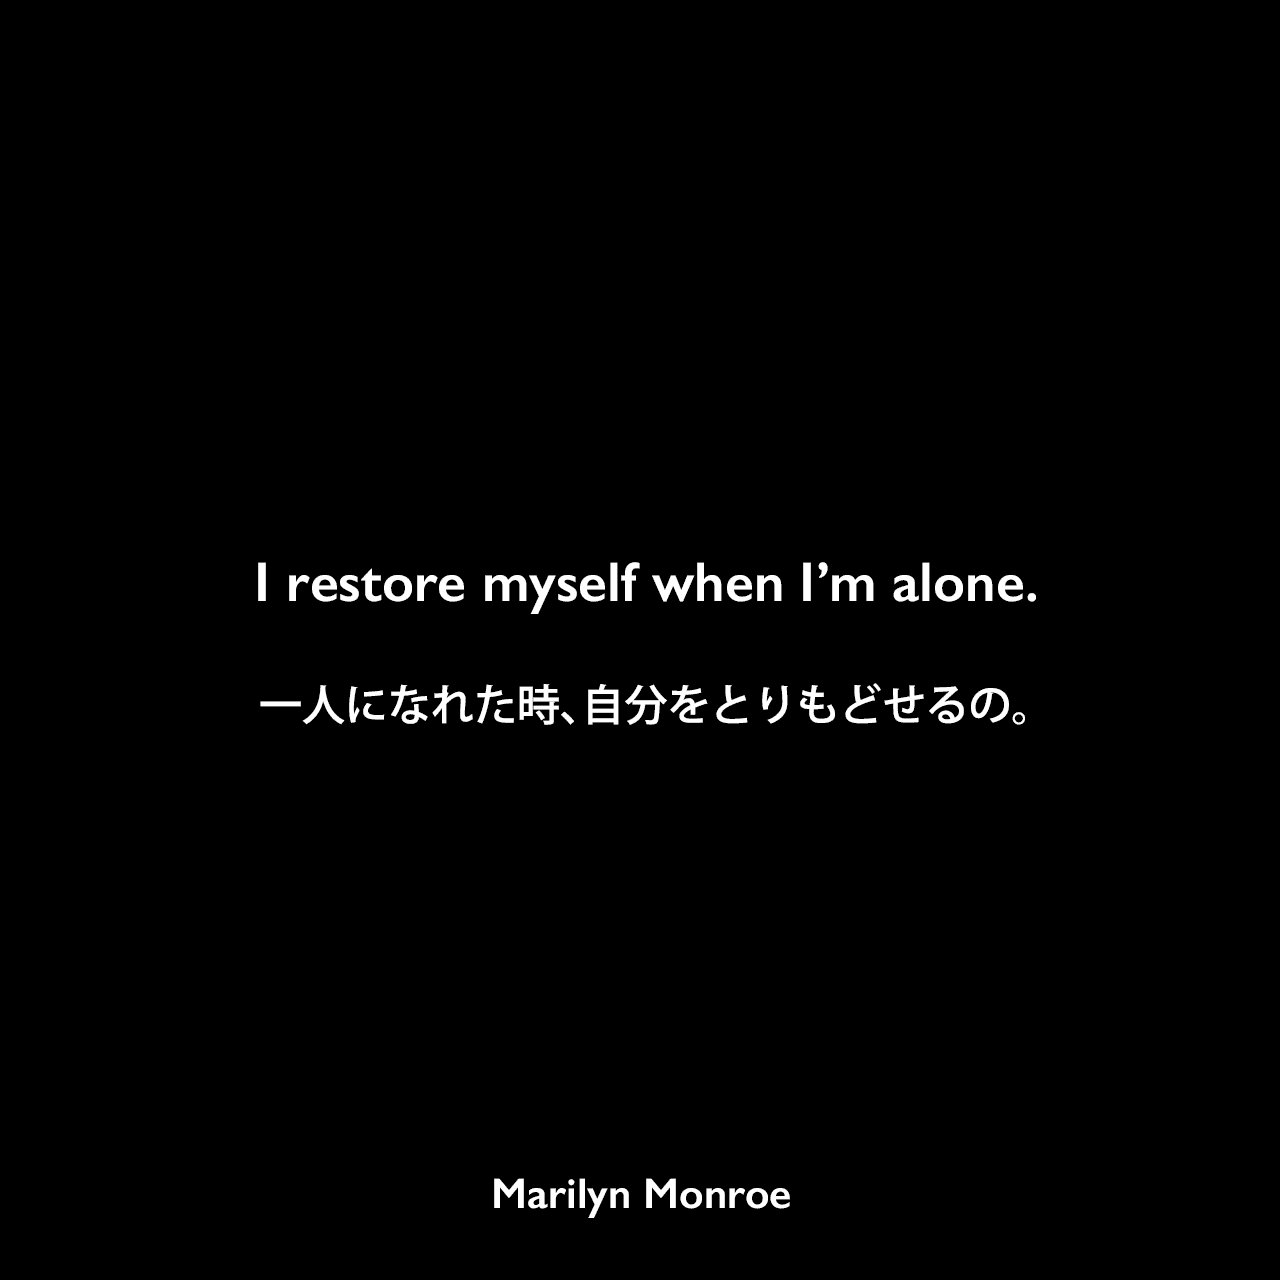 I restore myself when I’m alone.一人になれた時、自分をとりもどせるの。Marilyn Monroe